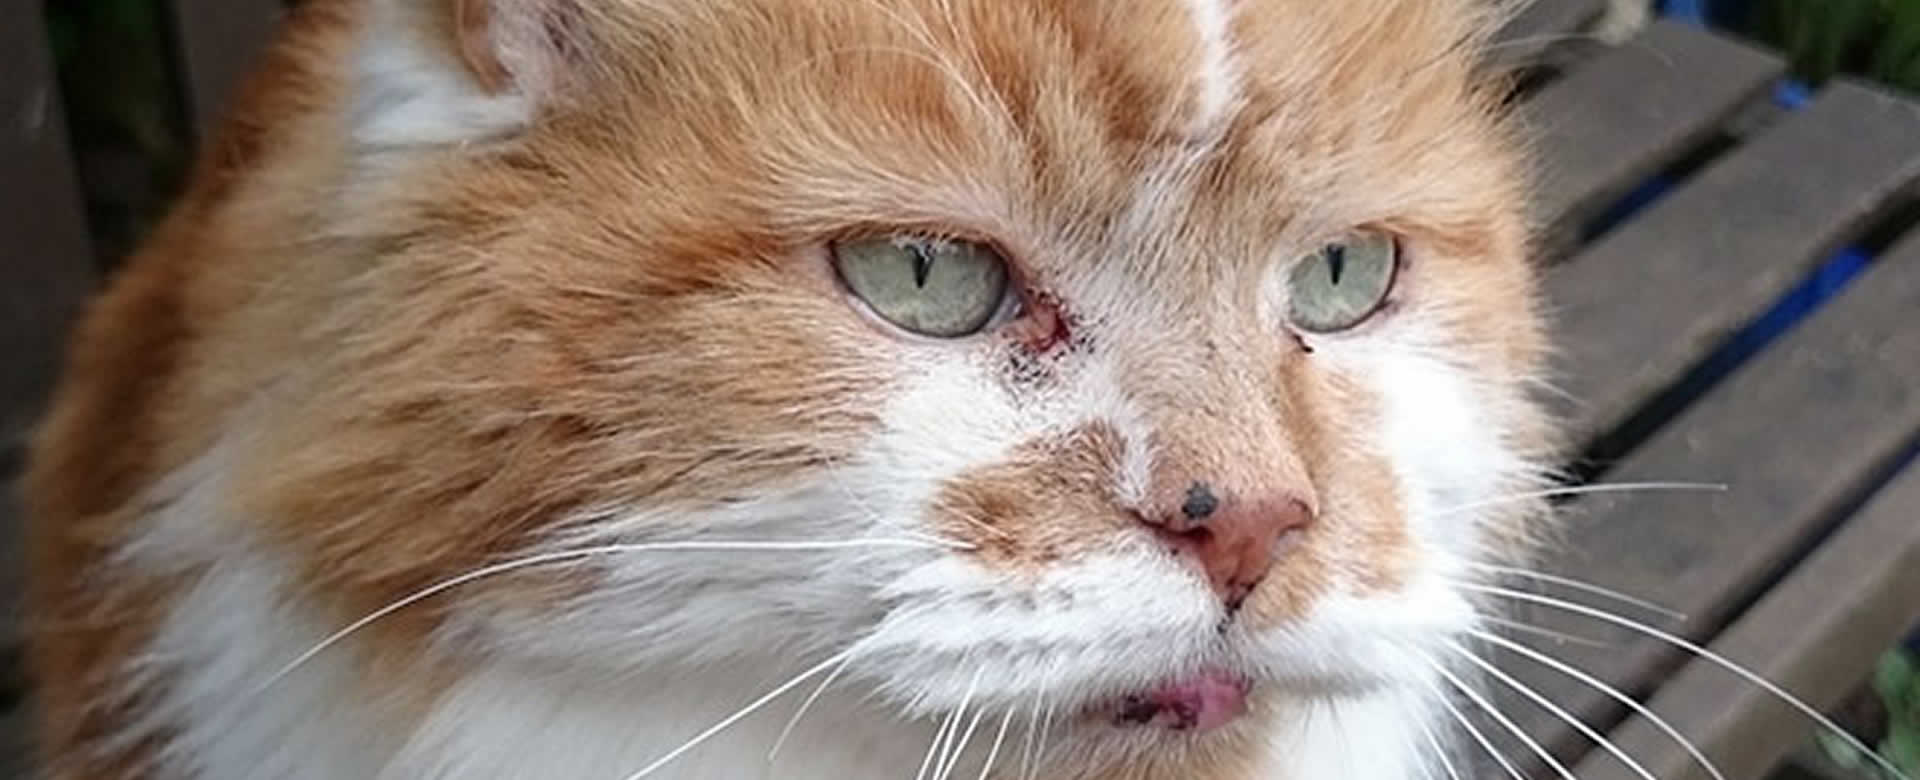 Rubble, ahora es el gato más viejo del mundo con 30 años de edad